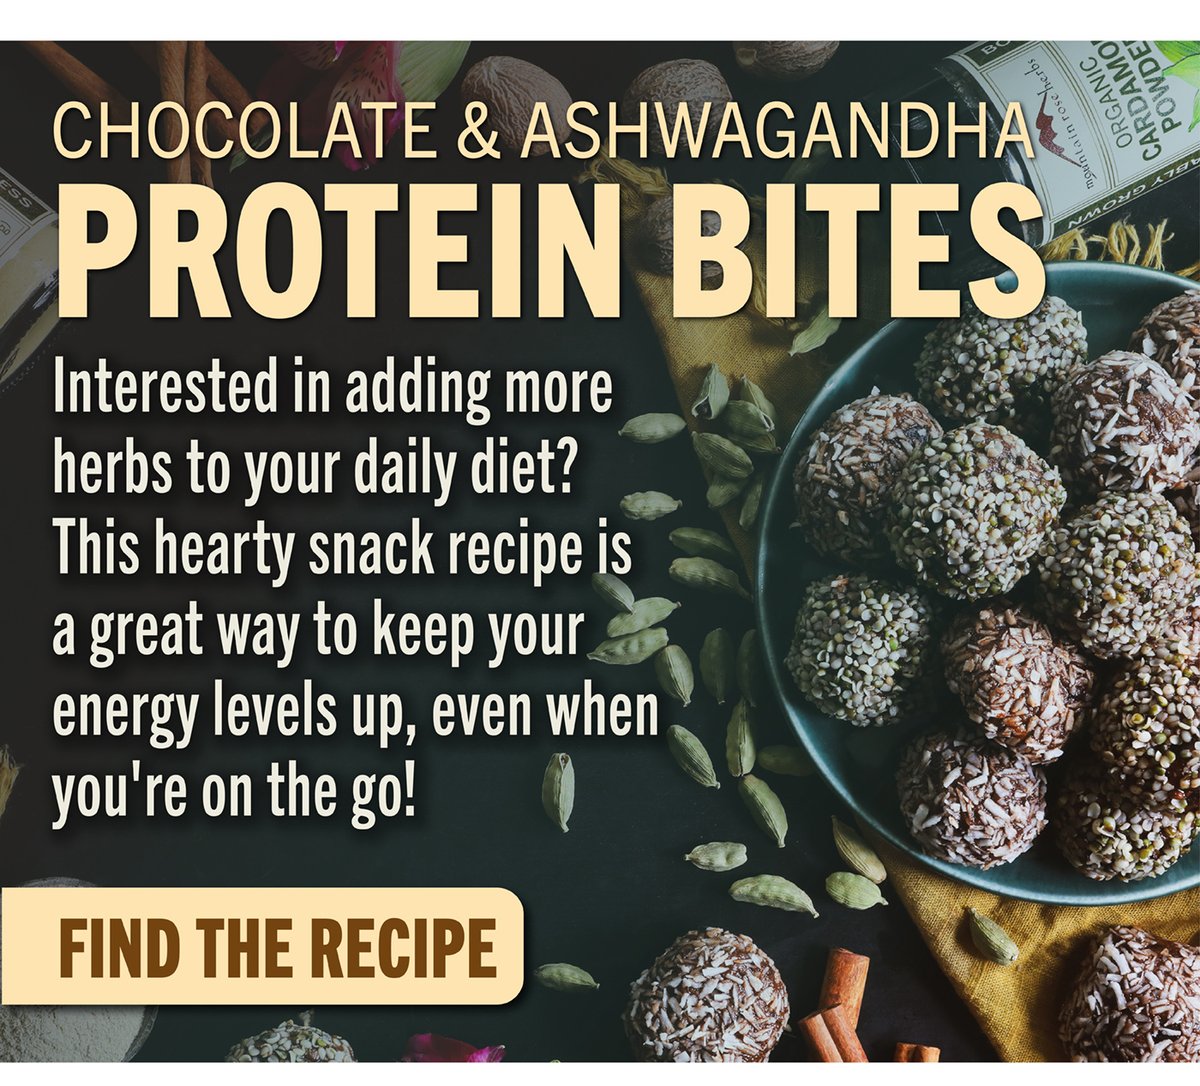 Chocolate & Ashwagandha Protein Bites